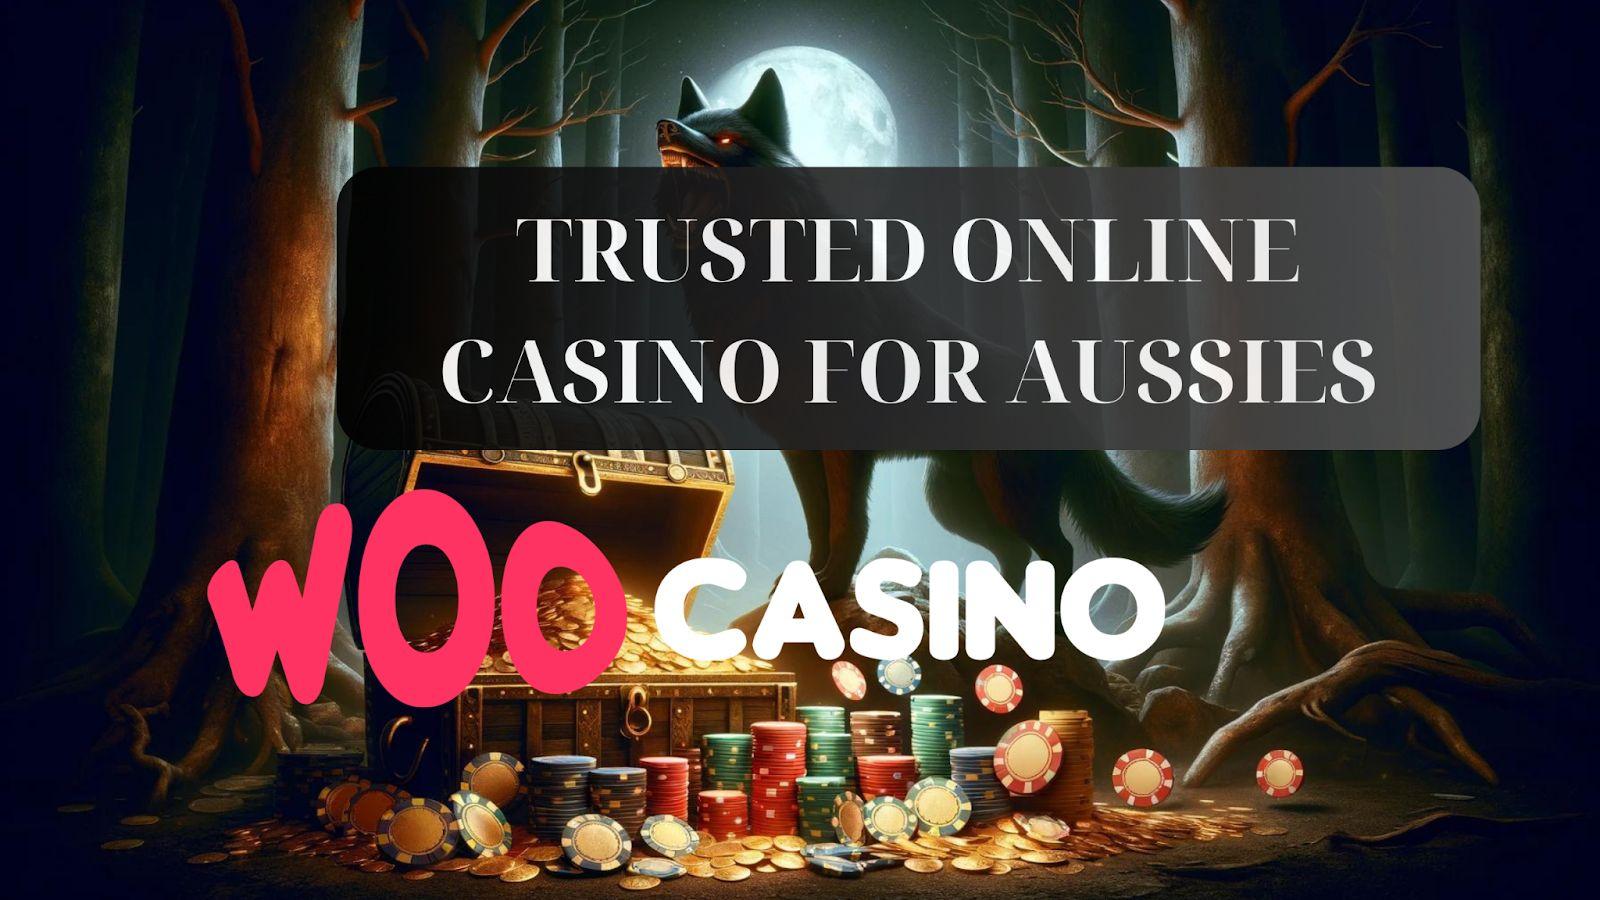 Woo Casino - La elección de confianza para los australianos